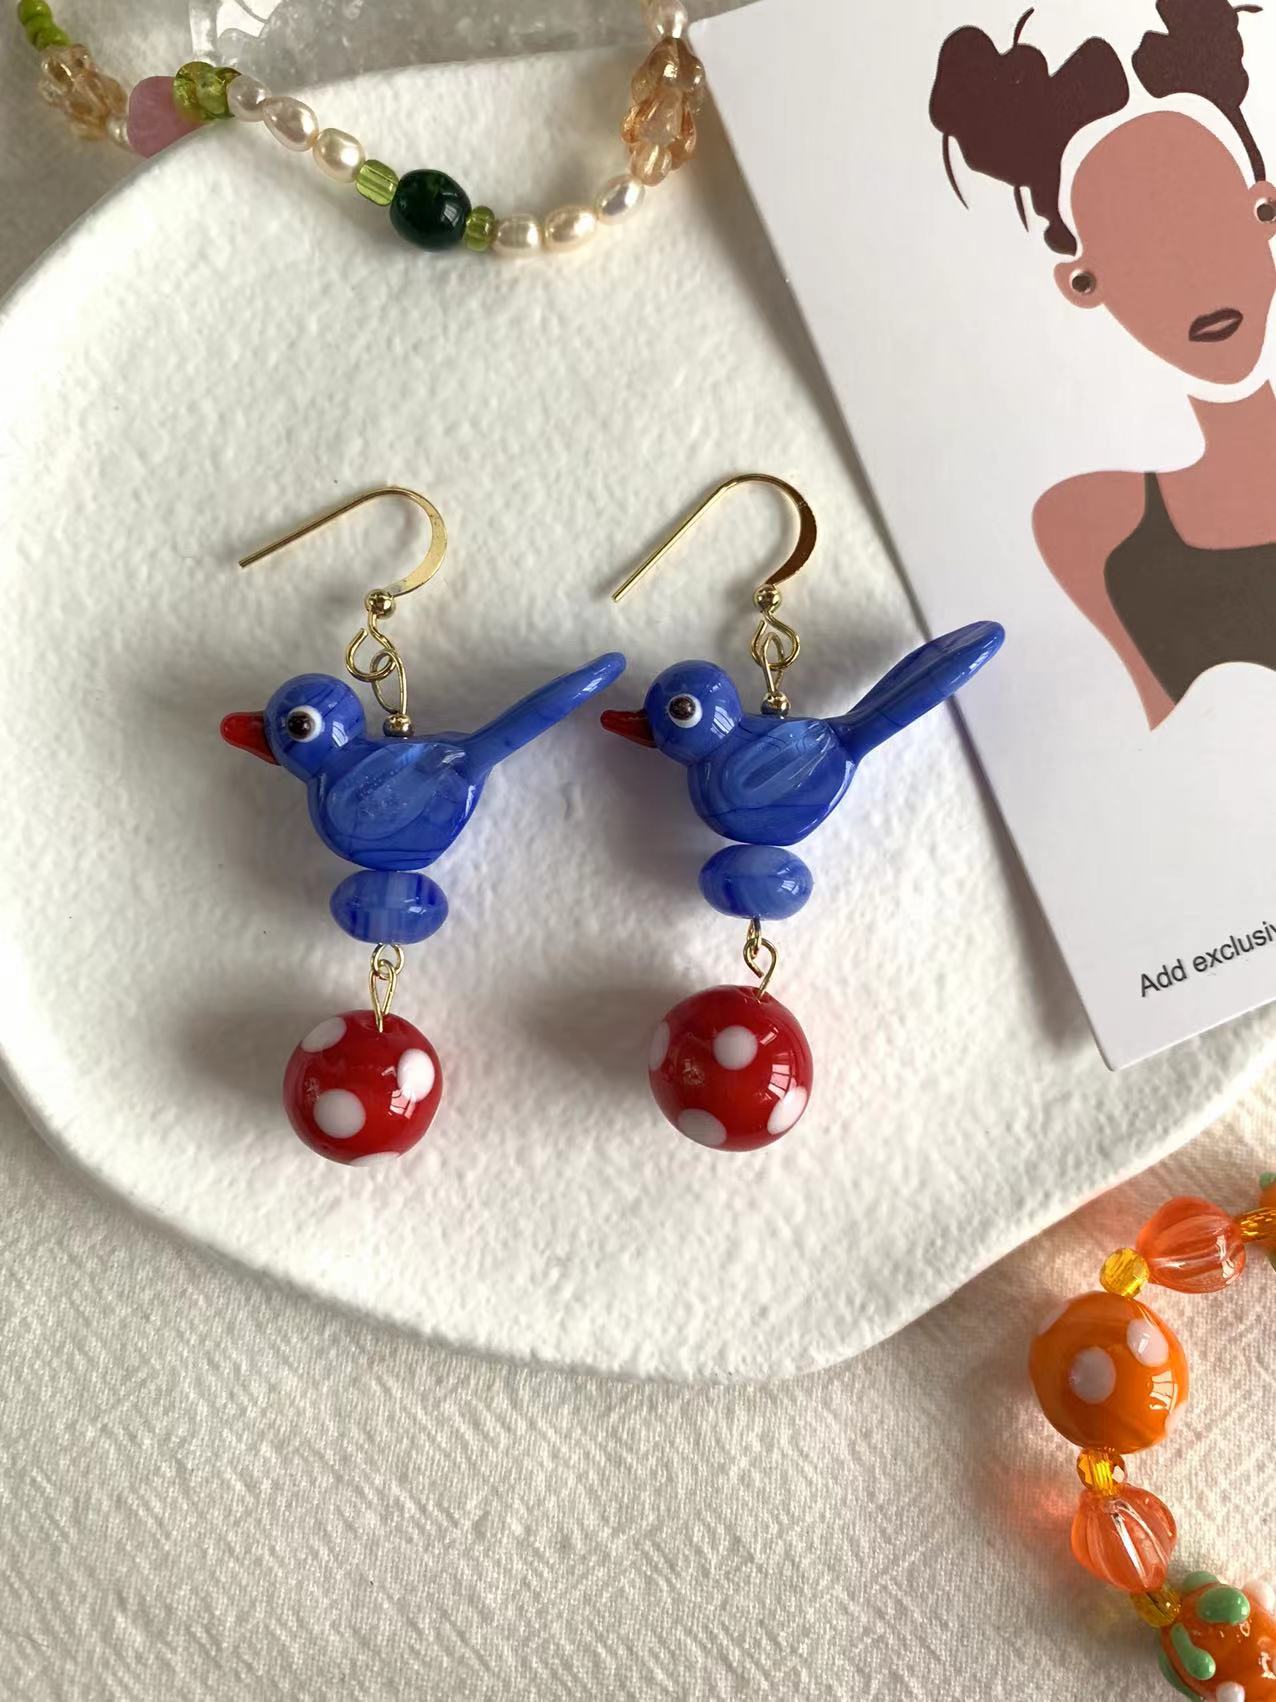 Blue bird earrings